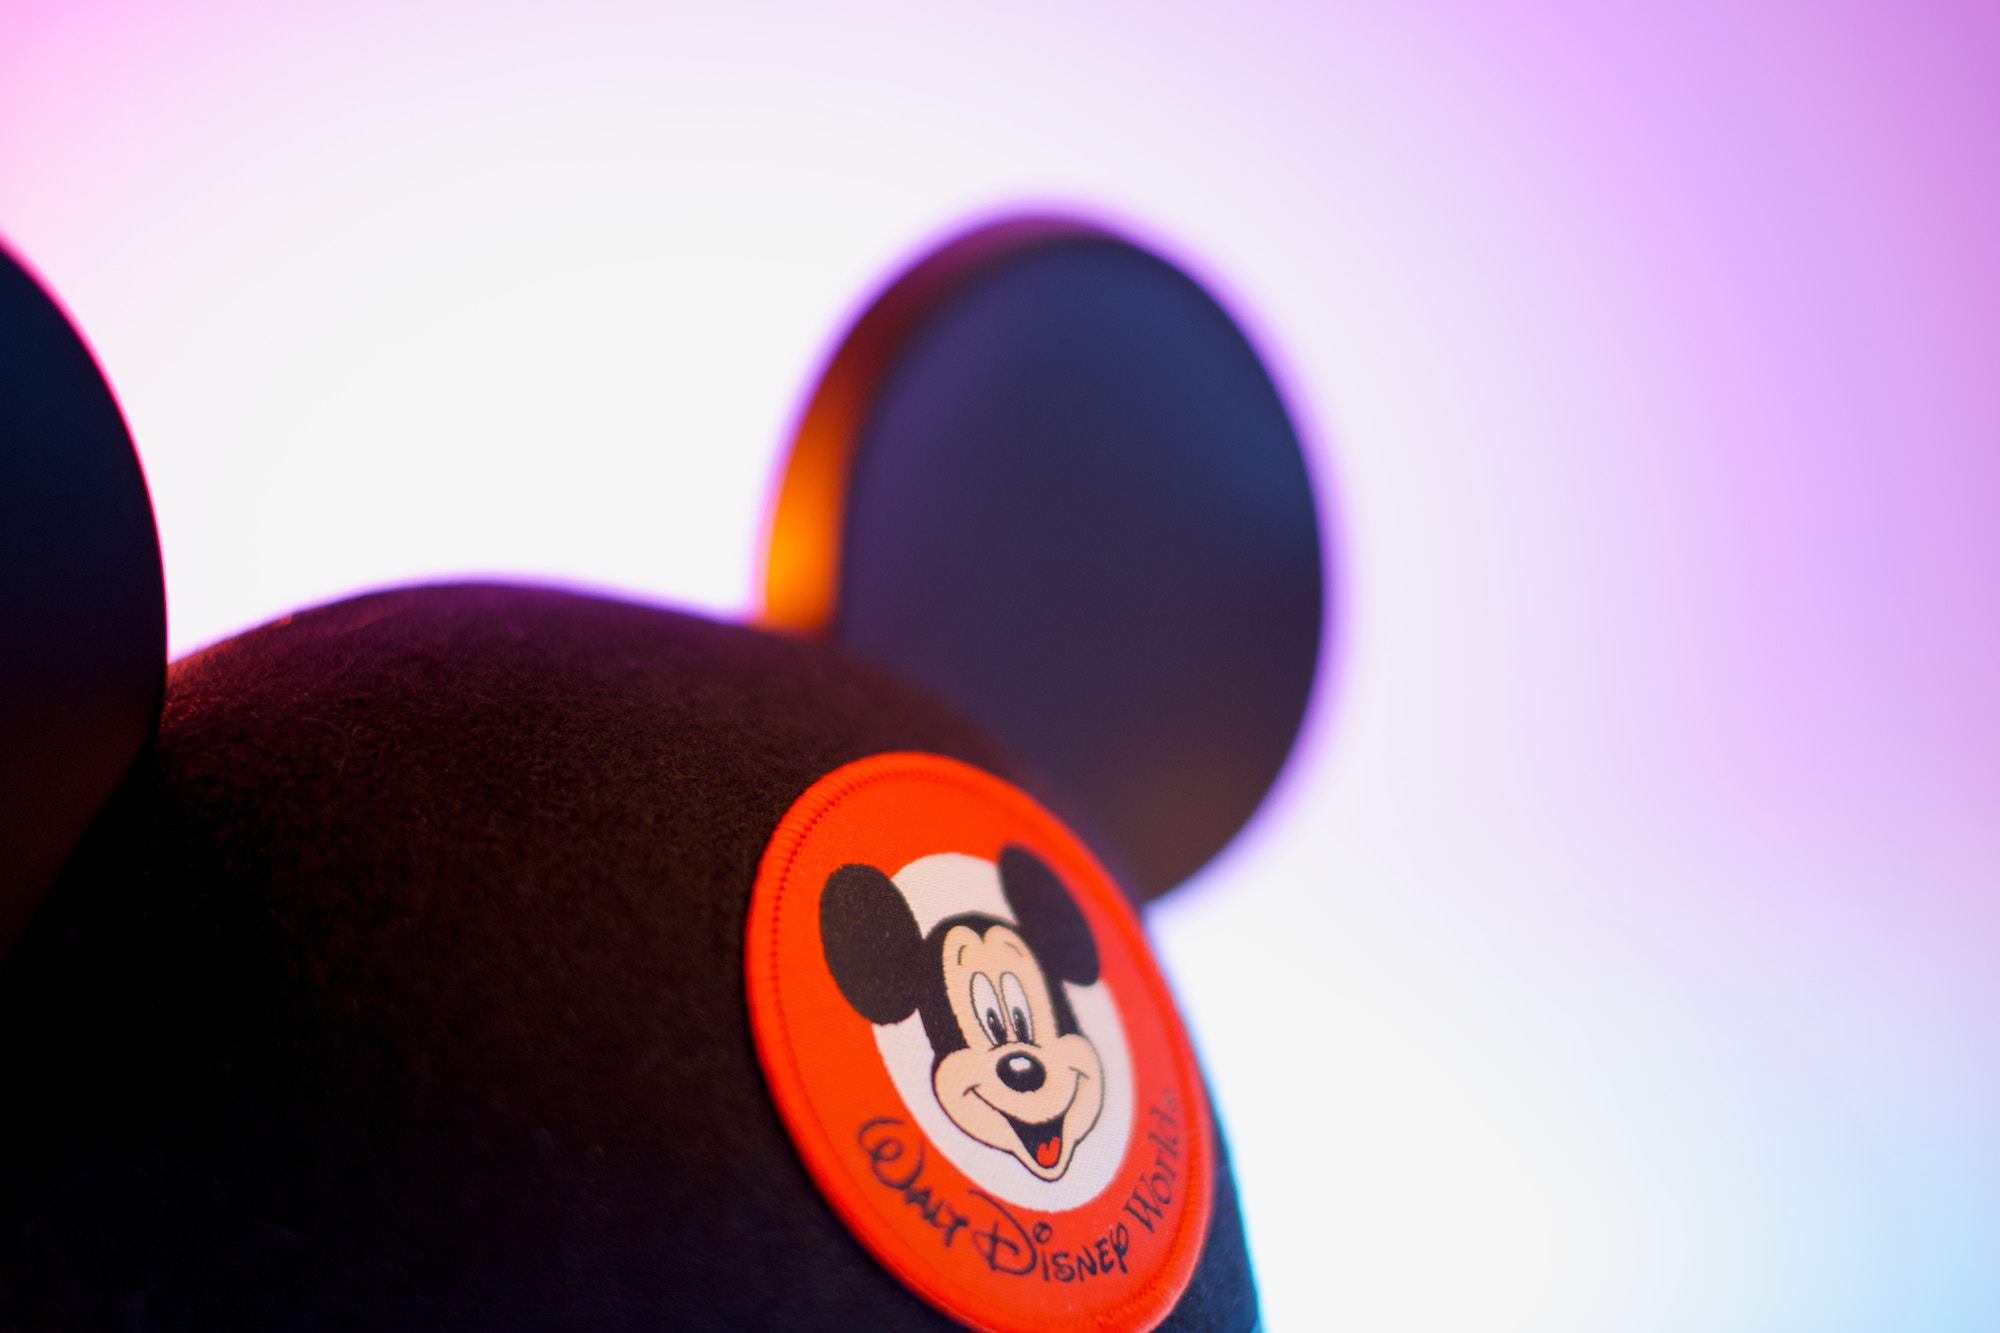 Wonderinterest | Los derechos del personaje Mickey Mouse han expirado para Walt Disney. ¿Cuál será el impacto en el valor de la compañía?